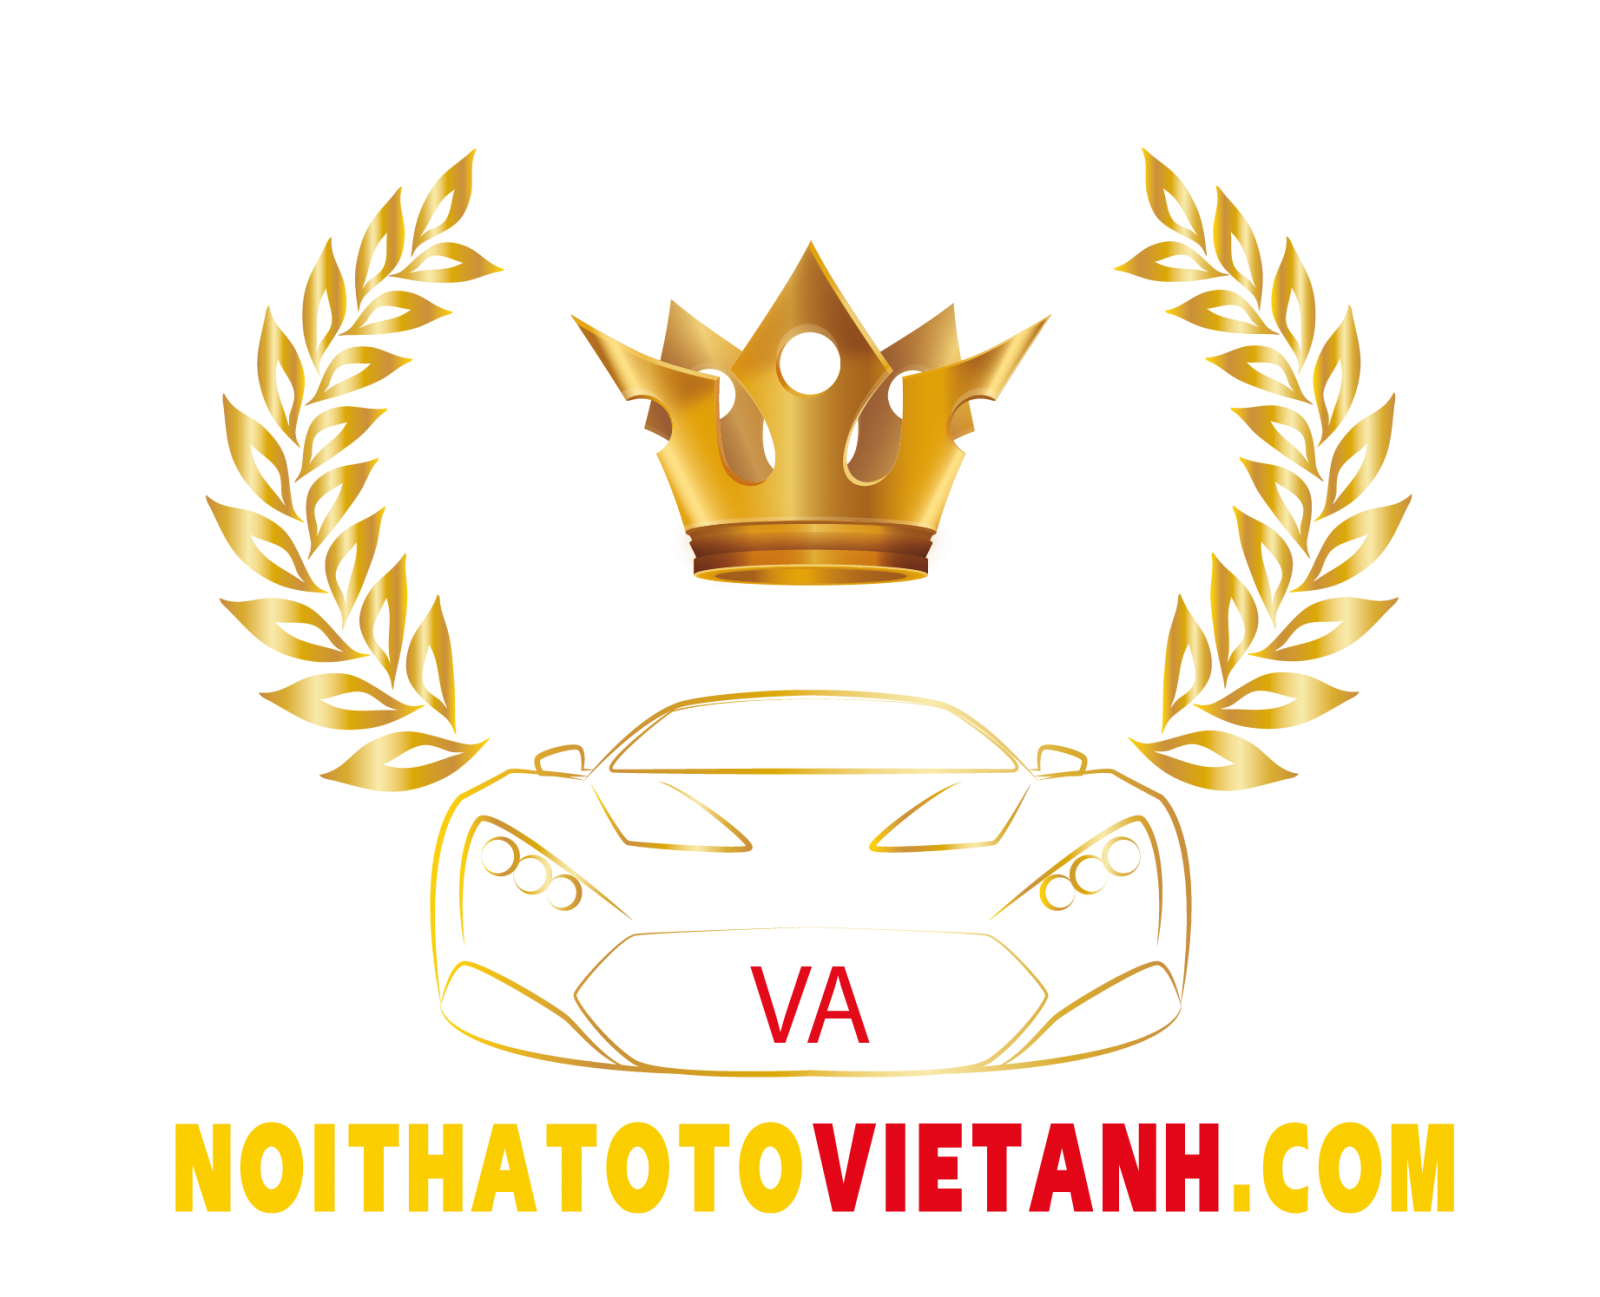 Thay đổi để thành công - Cùng Việt Anh Auto